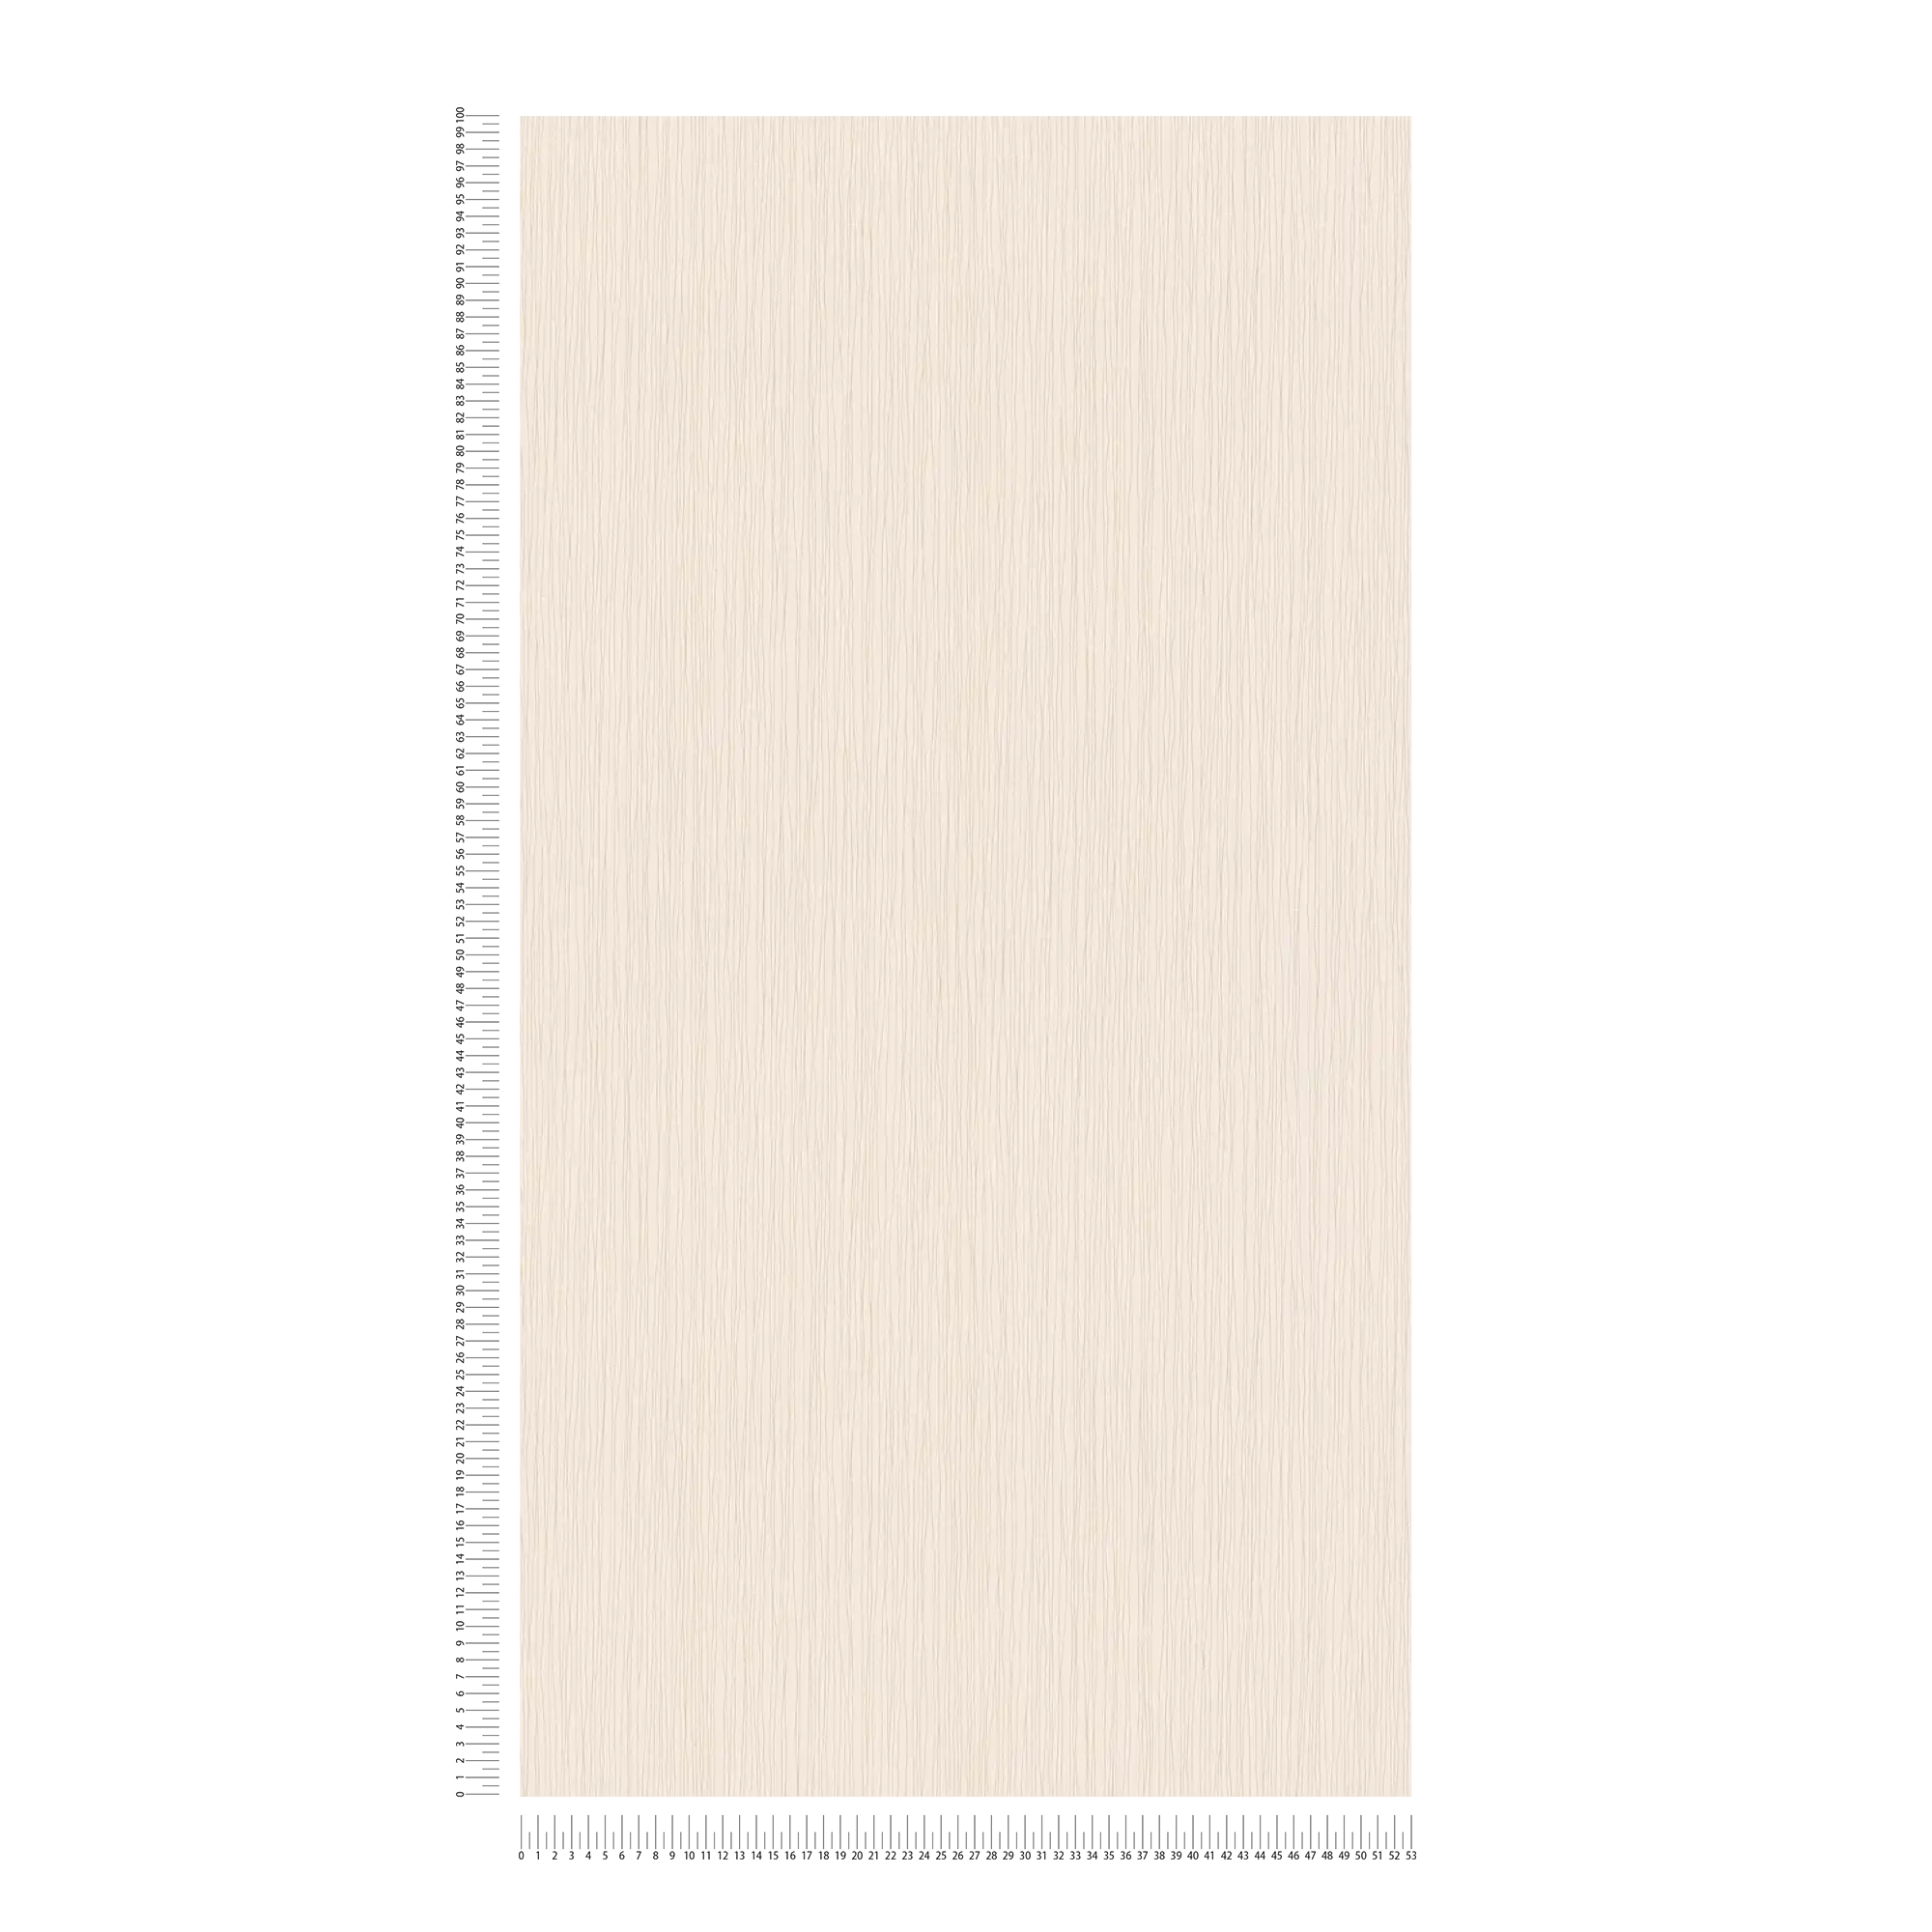             Papel pintado no tejido ligero con diseño de líneas beige y estructura en relieve
        